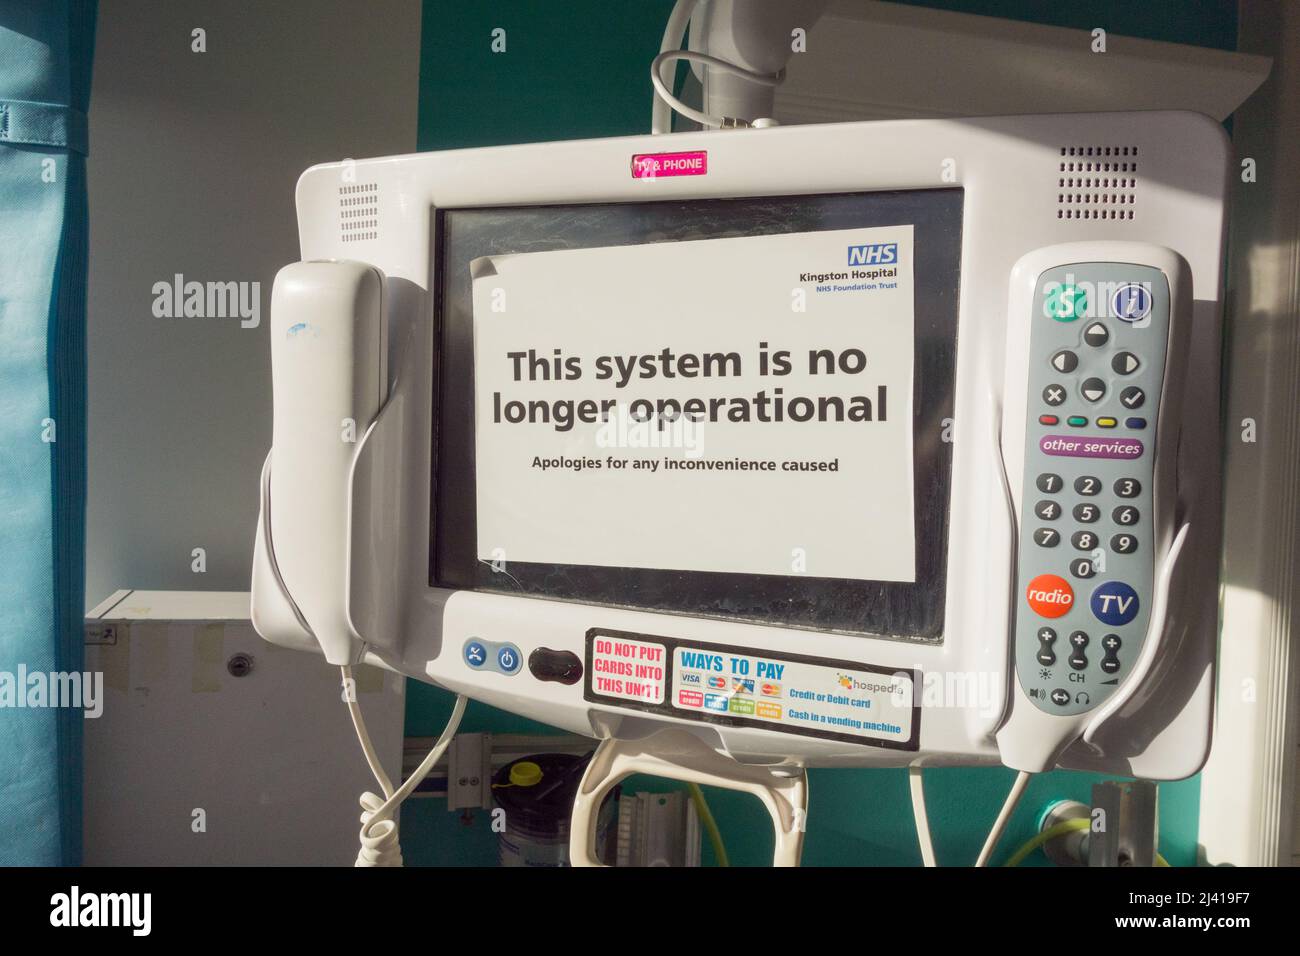 Gros plan d'un système de télévision, de téléphone et de divertissement Hospedia non opérationnel à l'hôpital de Kingston, Londres, Angleterre, Royaume-Uni Banque D'Images